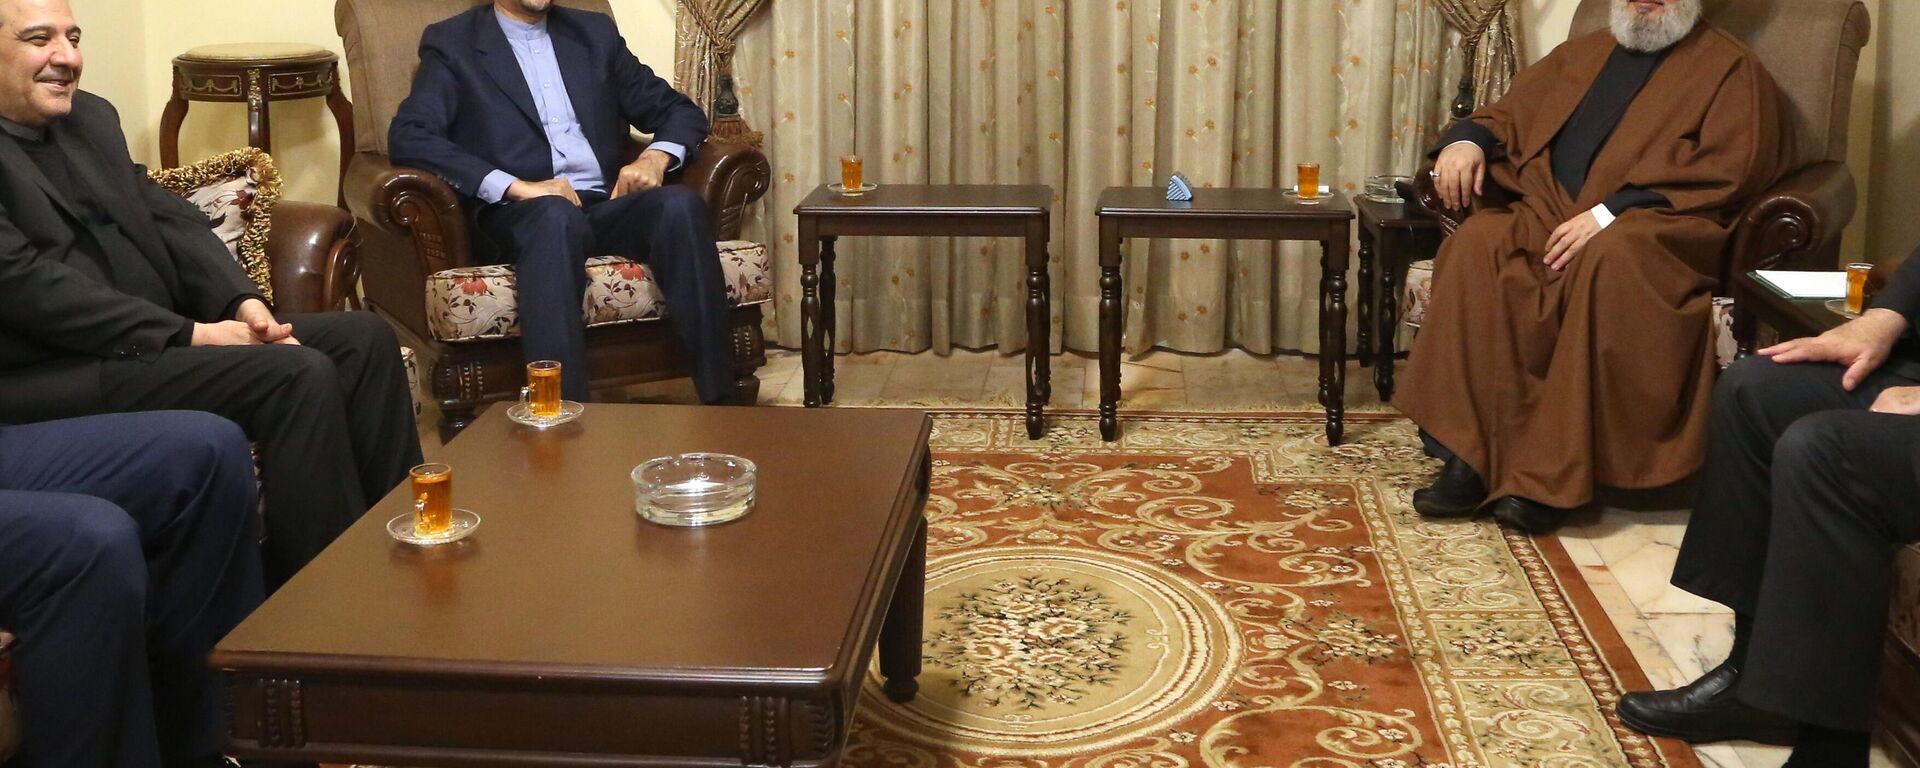 İran Dışişleri Bakanı Hüseyin Emir Abdullahiyan (sol 2), resmi temaslarda bulunmak üzere geldiği Lübnan'ın başkenti Beyrut'ta, Hizbullahı Genel Sekreteri Hasan Nasrallah (sağda) ile bir araya geldi.  - Sputnik Türkiye, 1920, 14.01.2023